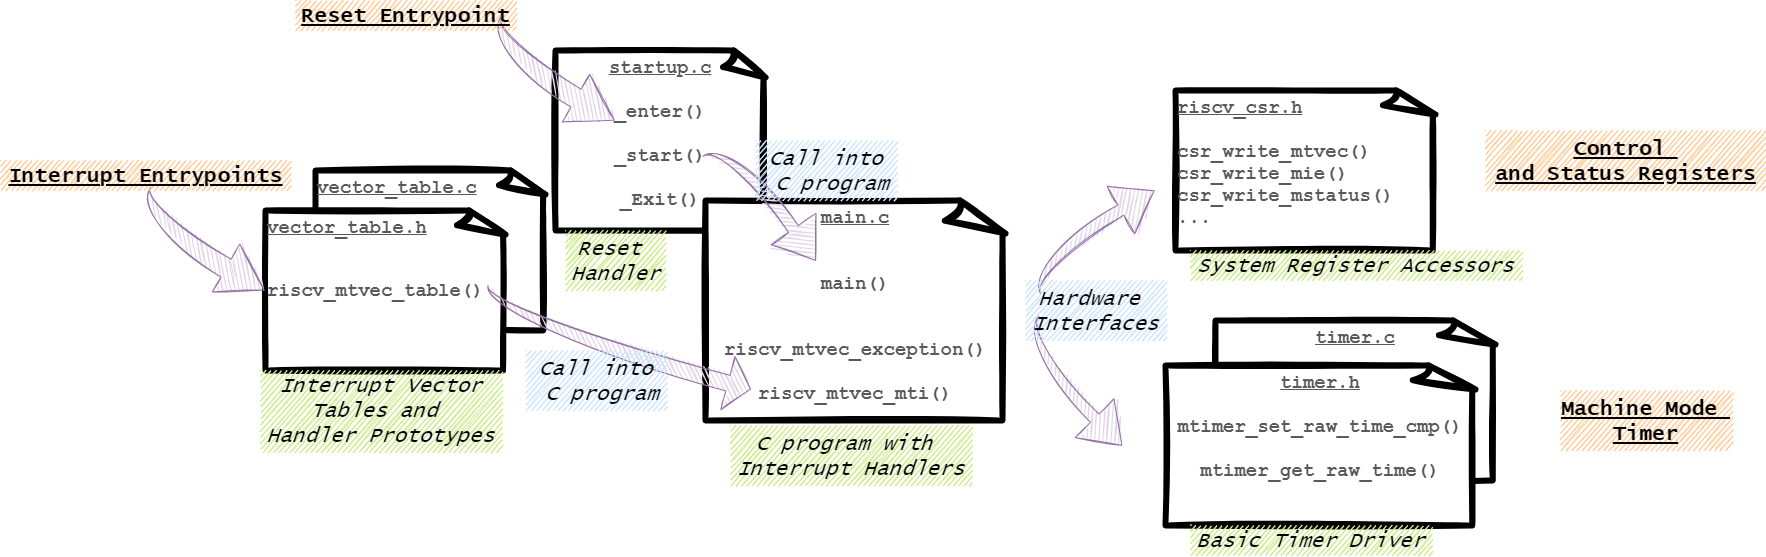 Example Program